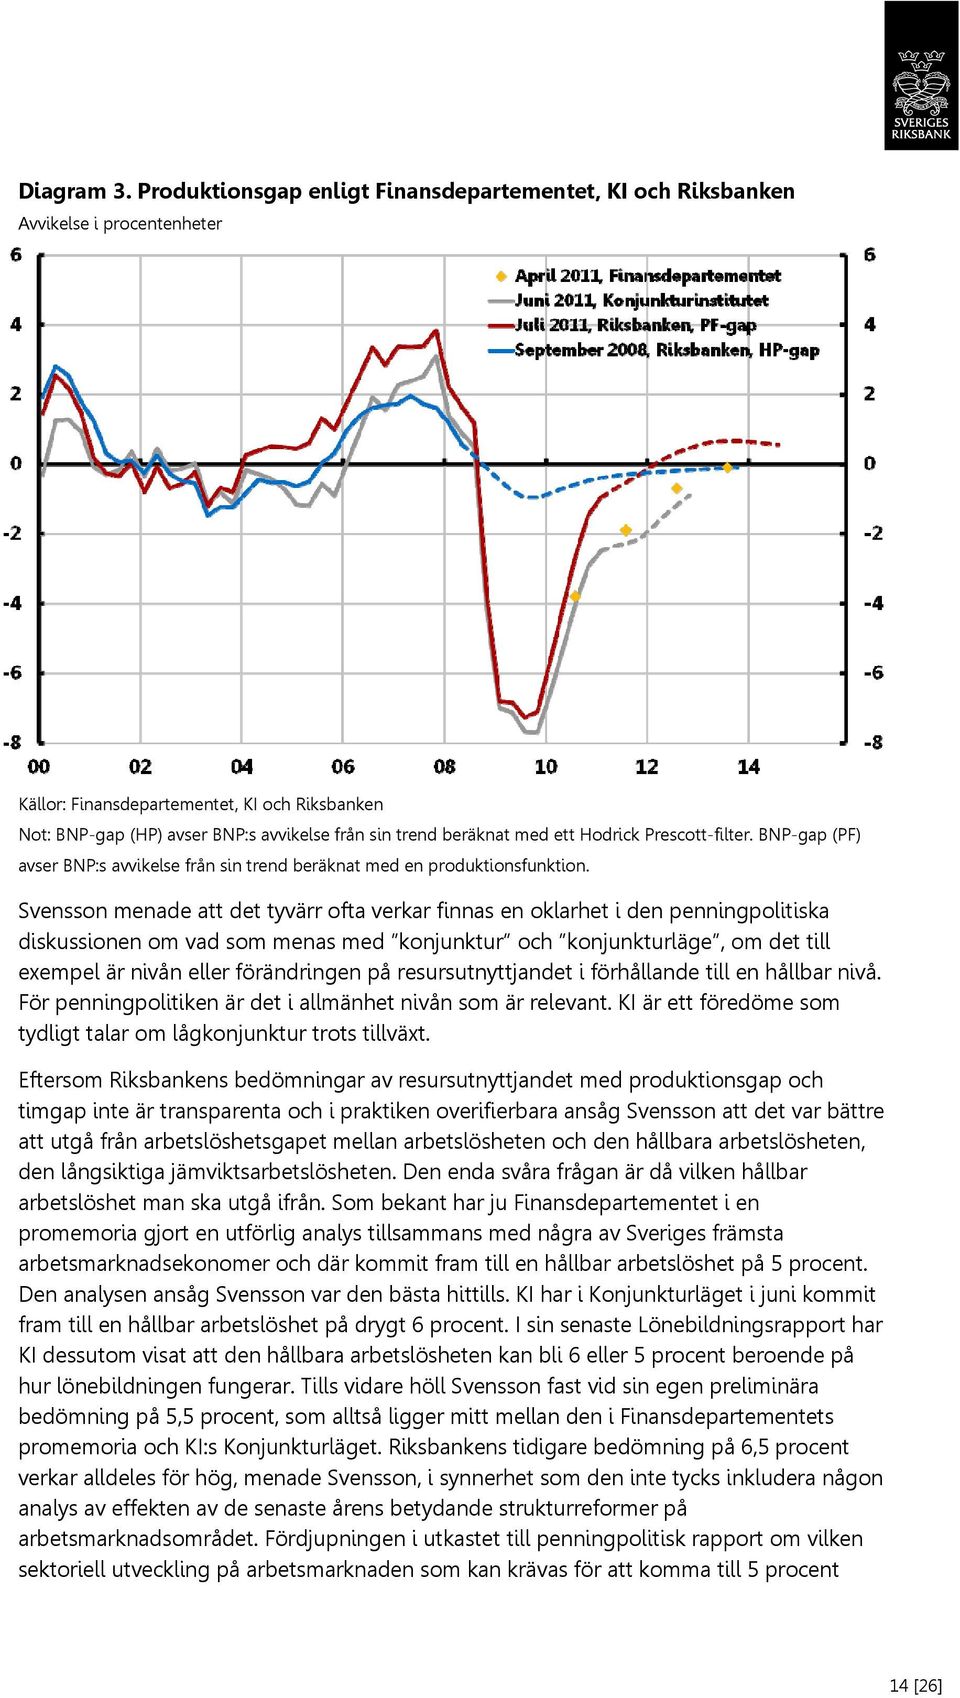 med ett Hodrick Prescott-filter. BNP-gap (PF) avser BNP:s avvikelse från sin trend beräknat med en produktionsfunktion.